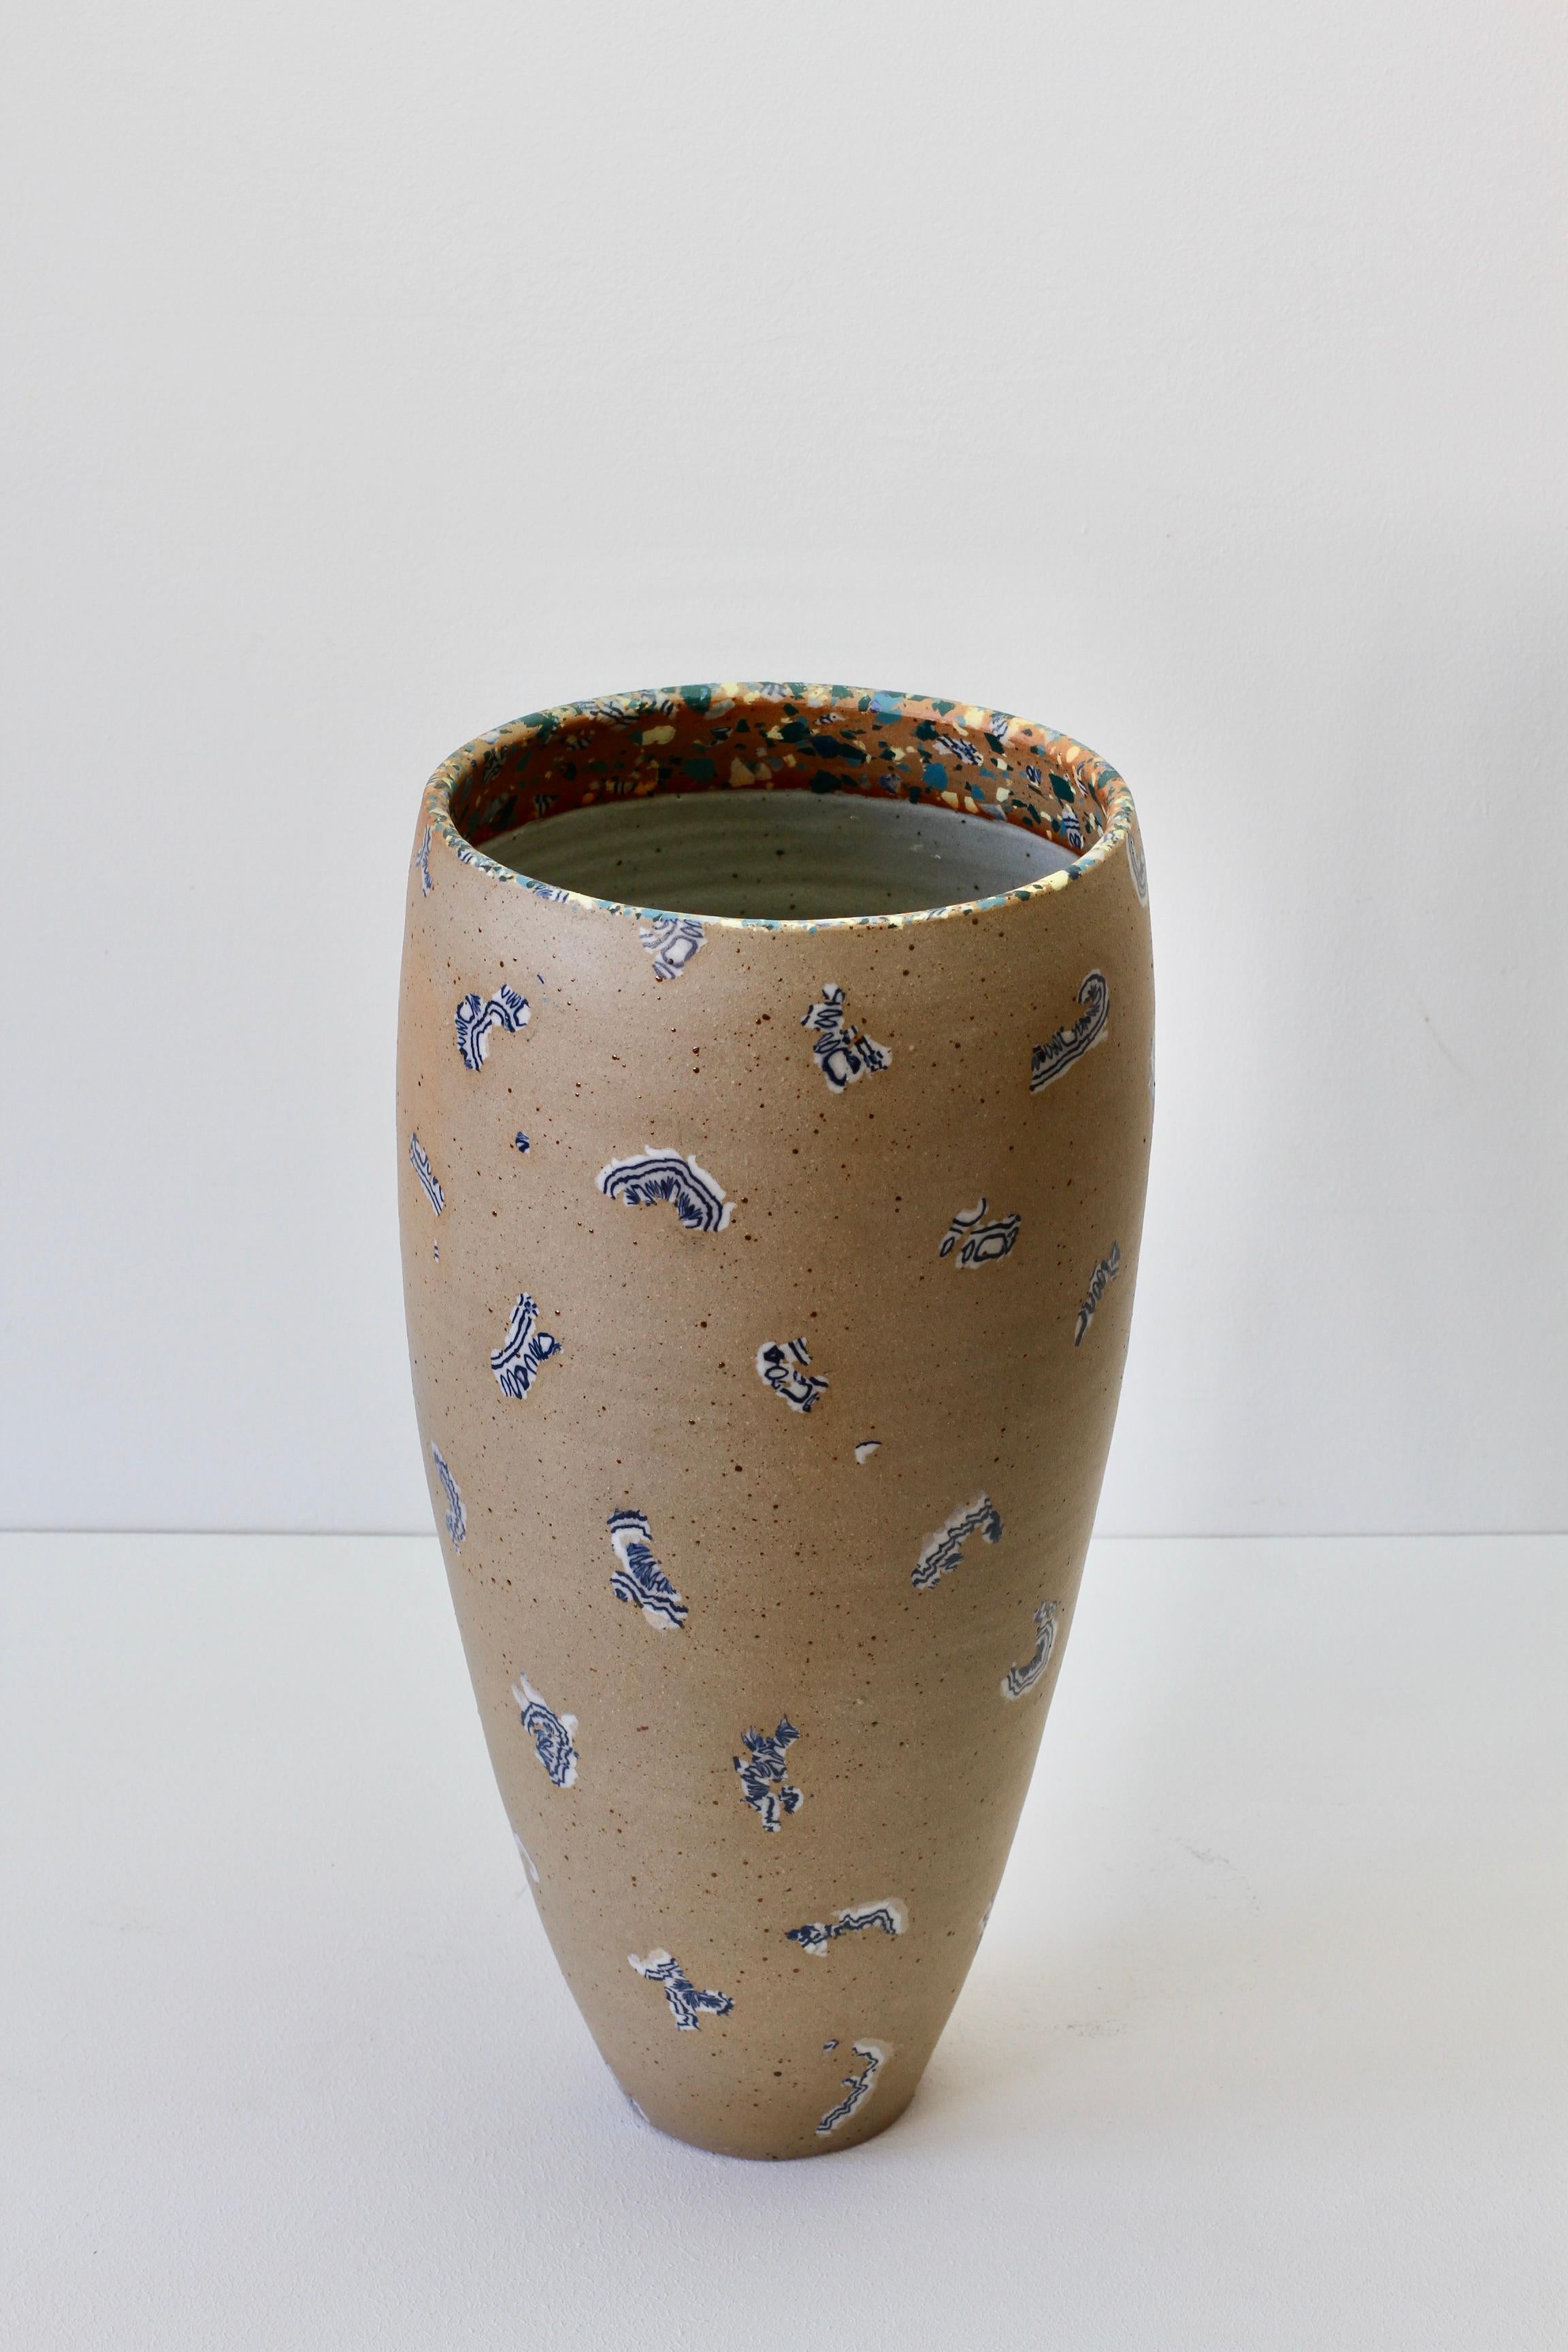 Wunderschöne, einzigartige, hohe Vase aus Steinzeug von der deutschen Künstlerin Sabine Mooshammer, um 1992. Dieses Stück Kunst Studio Pottery ist wirklich ziemlich exquisit mit den schönen blauen und weißen 